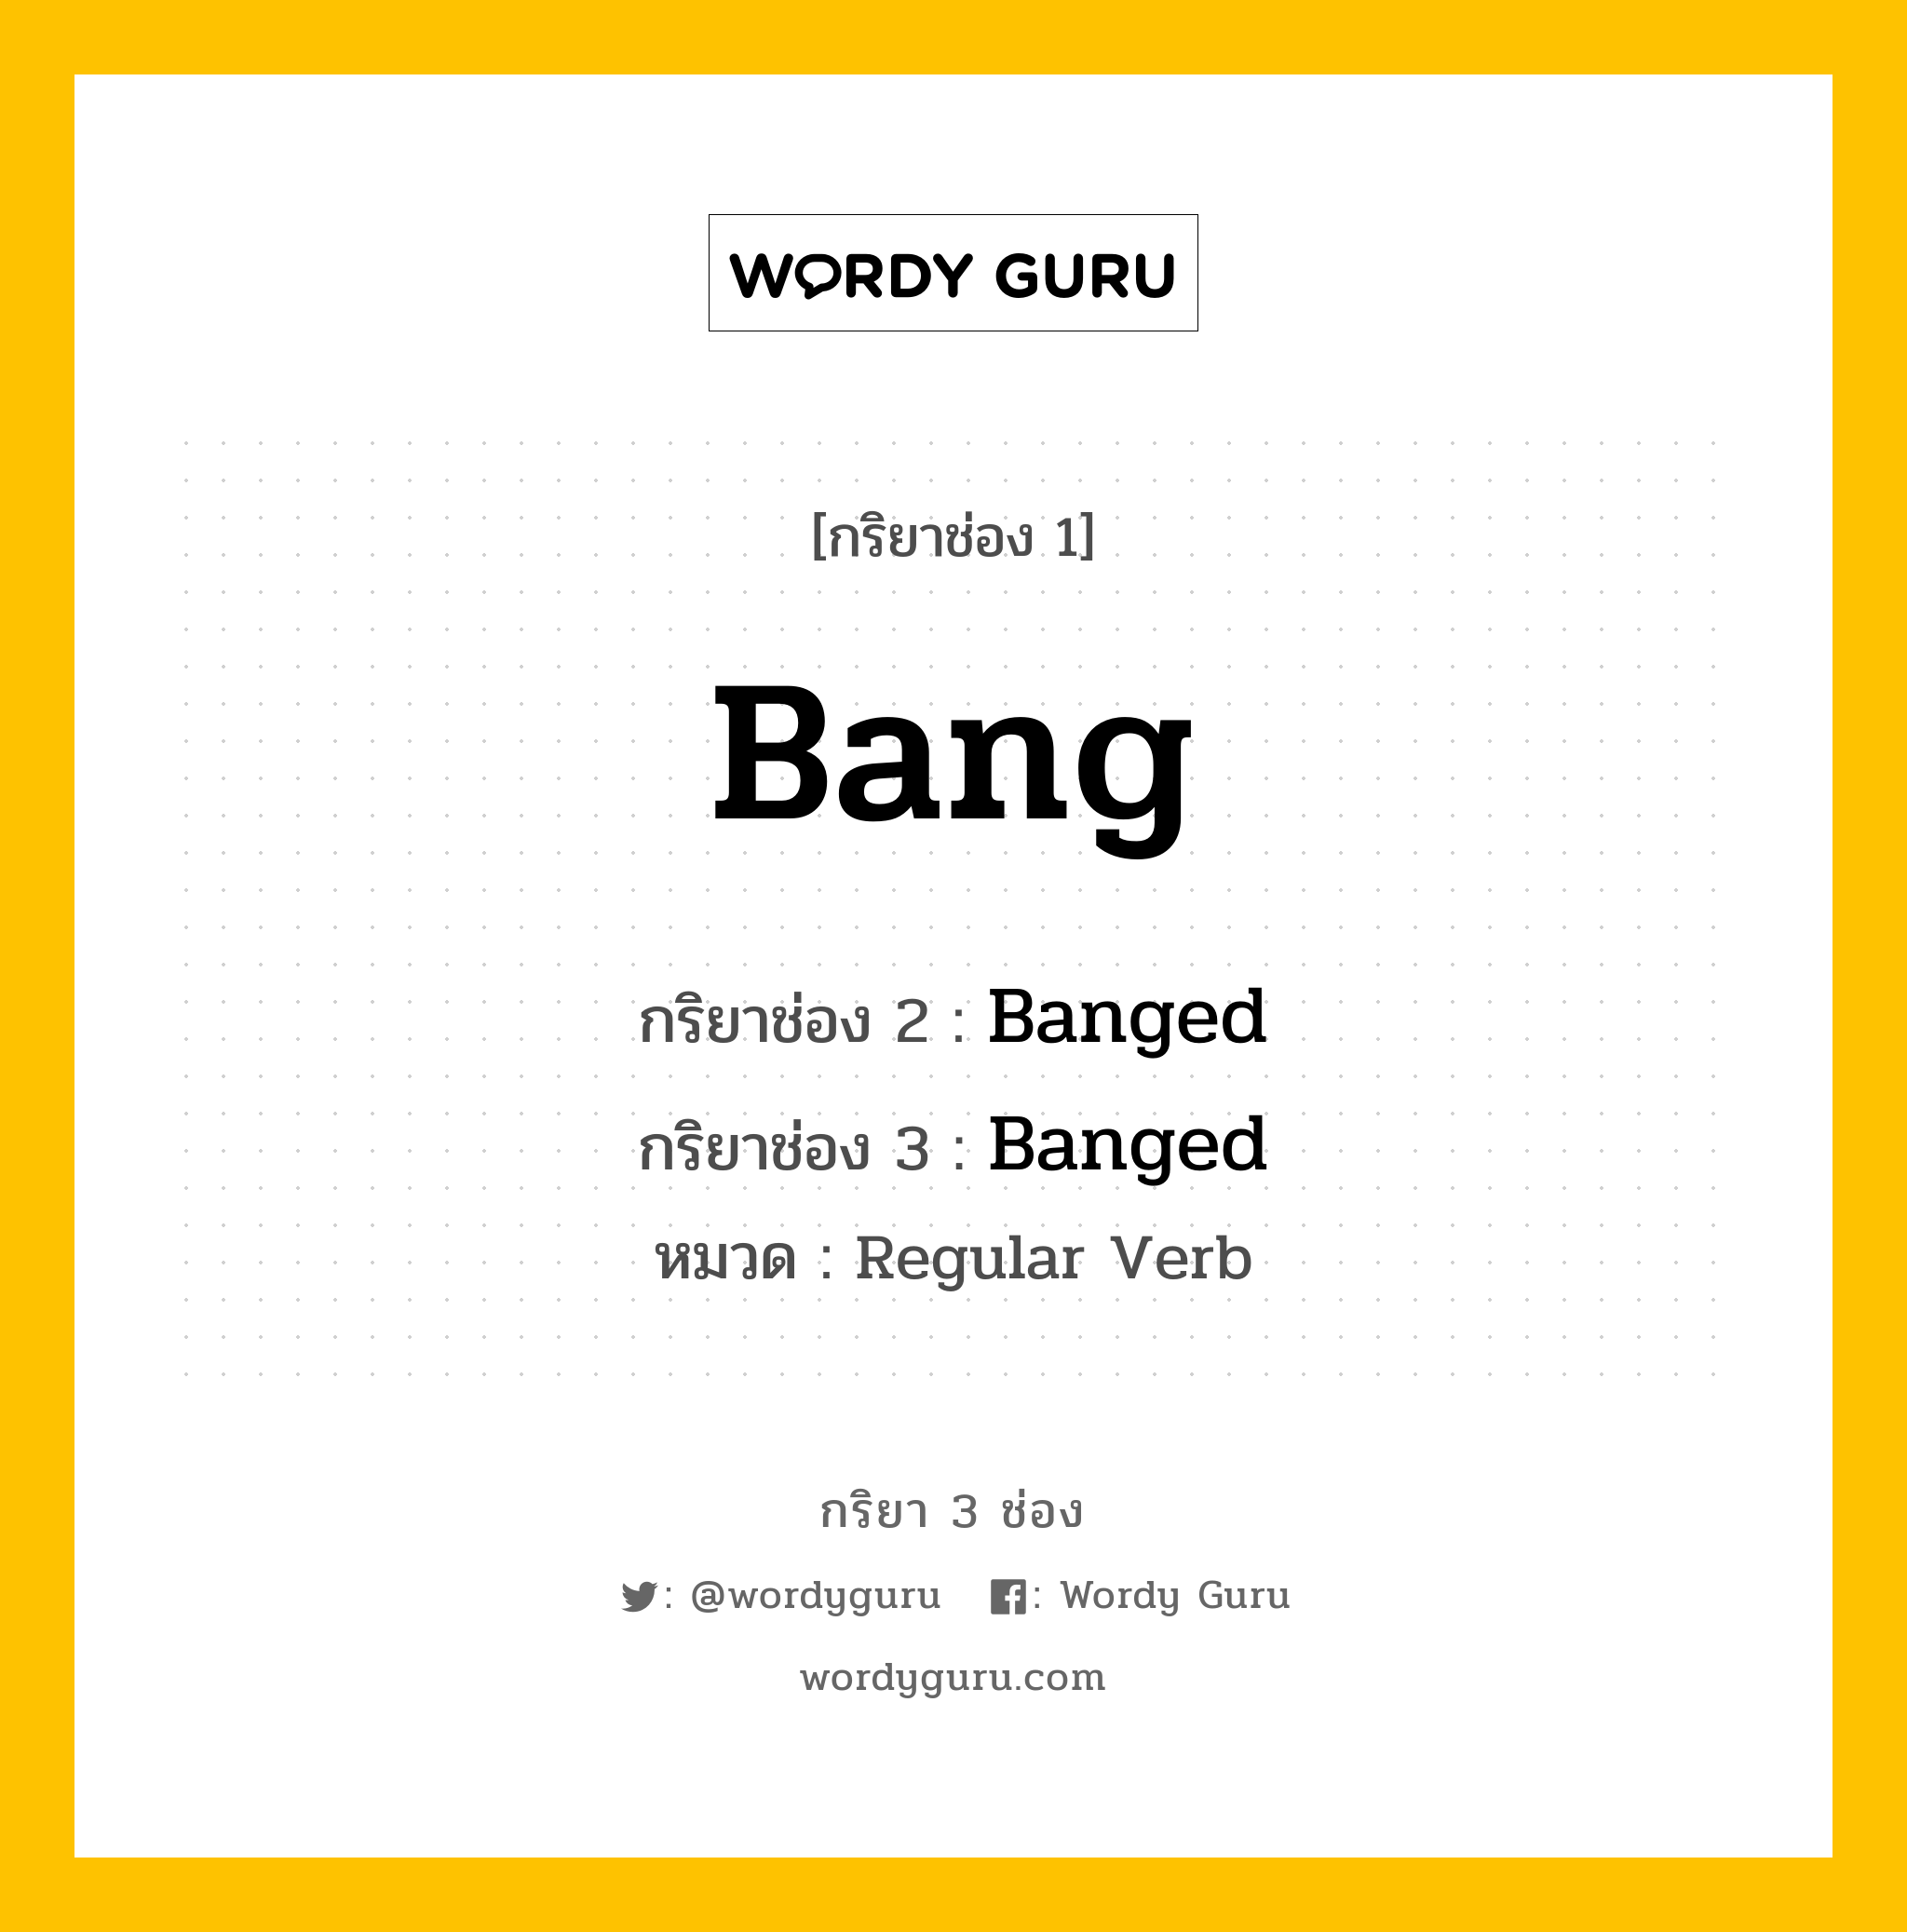 กริยา 3 ช่อง: Bang ช่อง 2 Bang ช่อง 3 คืออะไร, กริยาช่อง 1 Bang กริยาช่อง 2 Banged กริยาช่อง 3 Banged หมวด Regular Verb หมวด Regular Verb